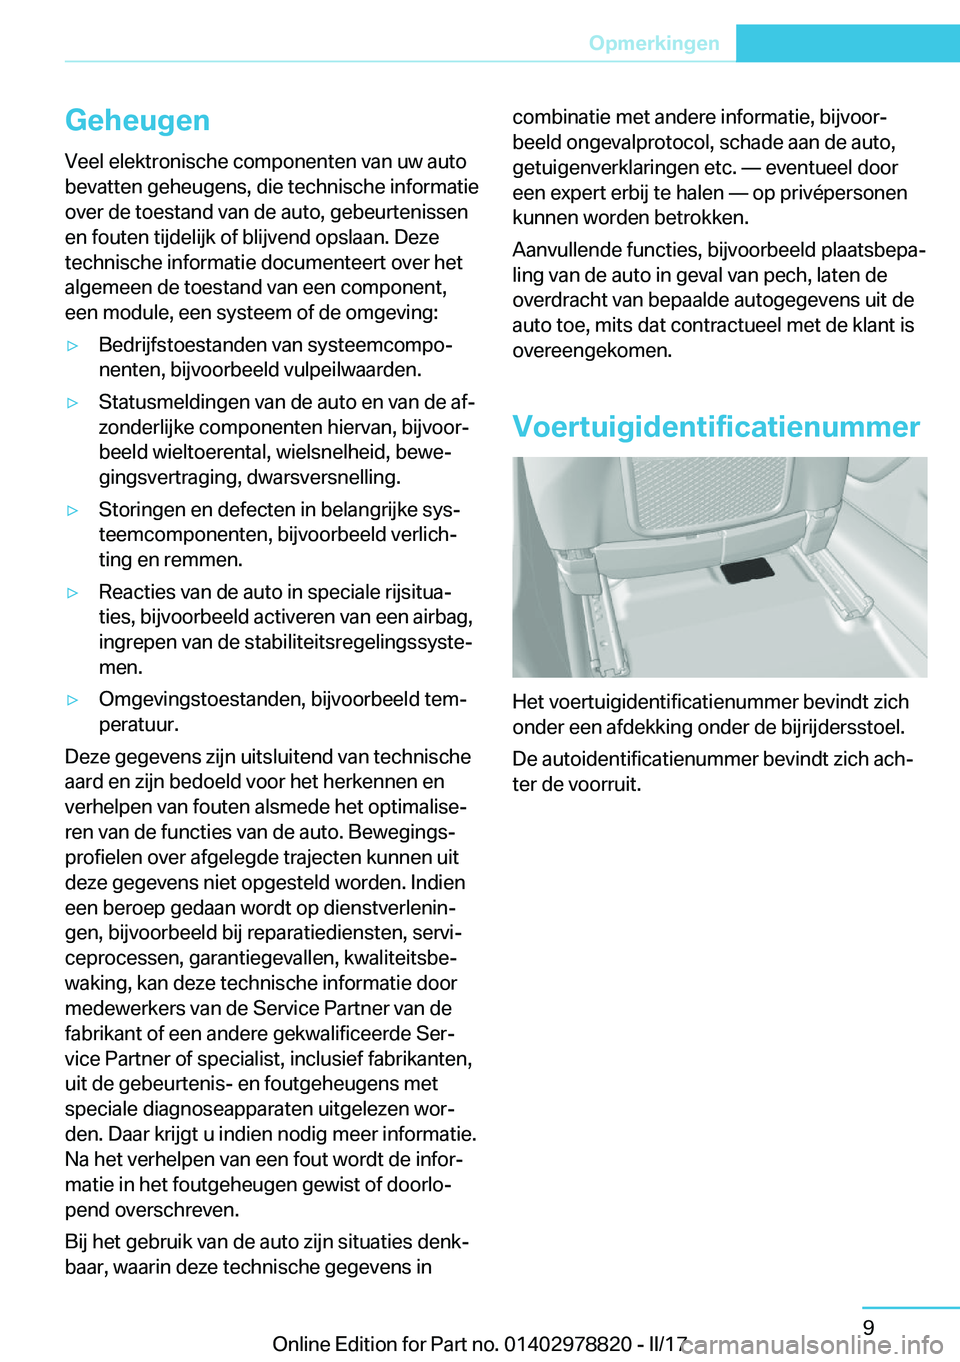 BMW I3 2017  Instructieboekjes (in Dutch) �G�e�h�e�u�g�e�n�V�e�e�l� �e�l�e�k�t�r�o�n�i�s�c�h�e� �c�o�m�p�o�n�e�n�t�e�n� �v�a�n� �u�w� �a�u�t�o�b�e�v�a�t�t�e�n� �g�e�h�e�u�g�e�n�s�,� �d�i�e� �t�e�c�h�n�i�s�c�h�e� �i�n�f�o�r�m�a�t�i�e
�o�v�e�r�